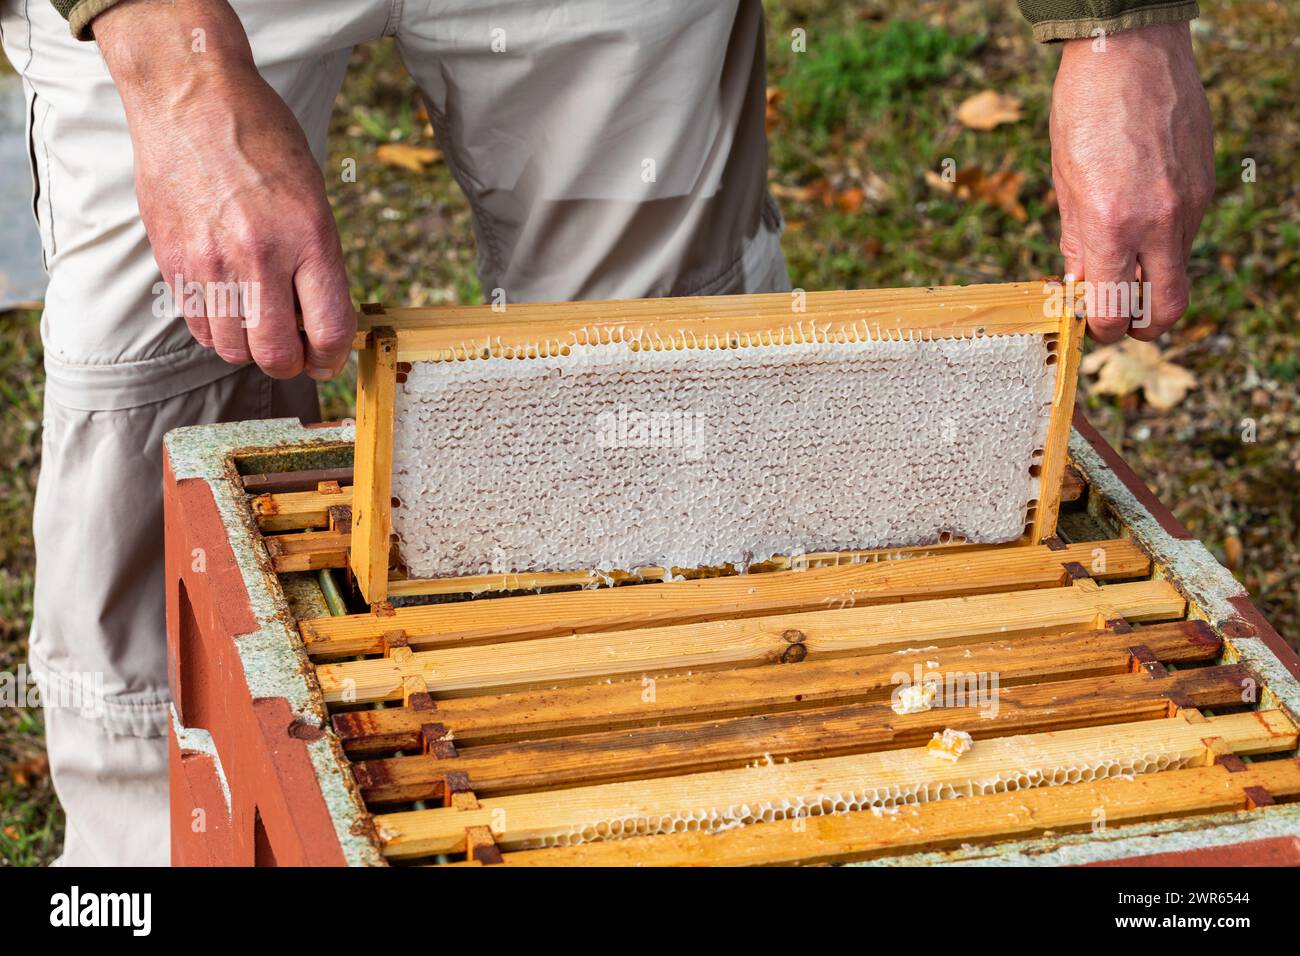 Apiculteur soulevant des cadres d'une ruche pour vérifier la présence de nid d'abeilles Banque D'Images